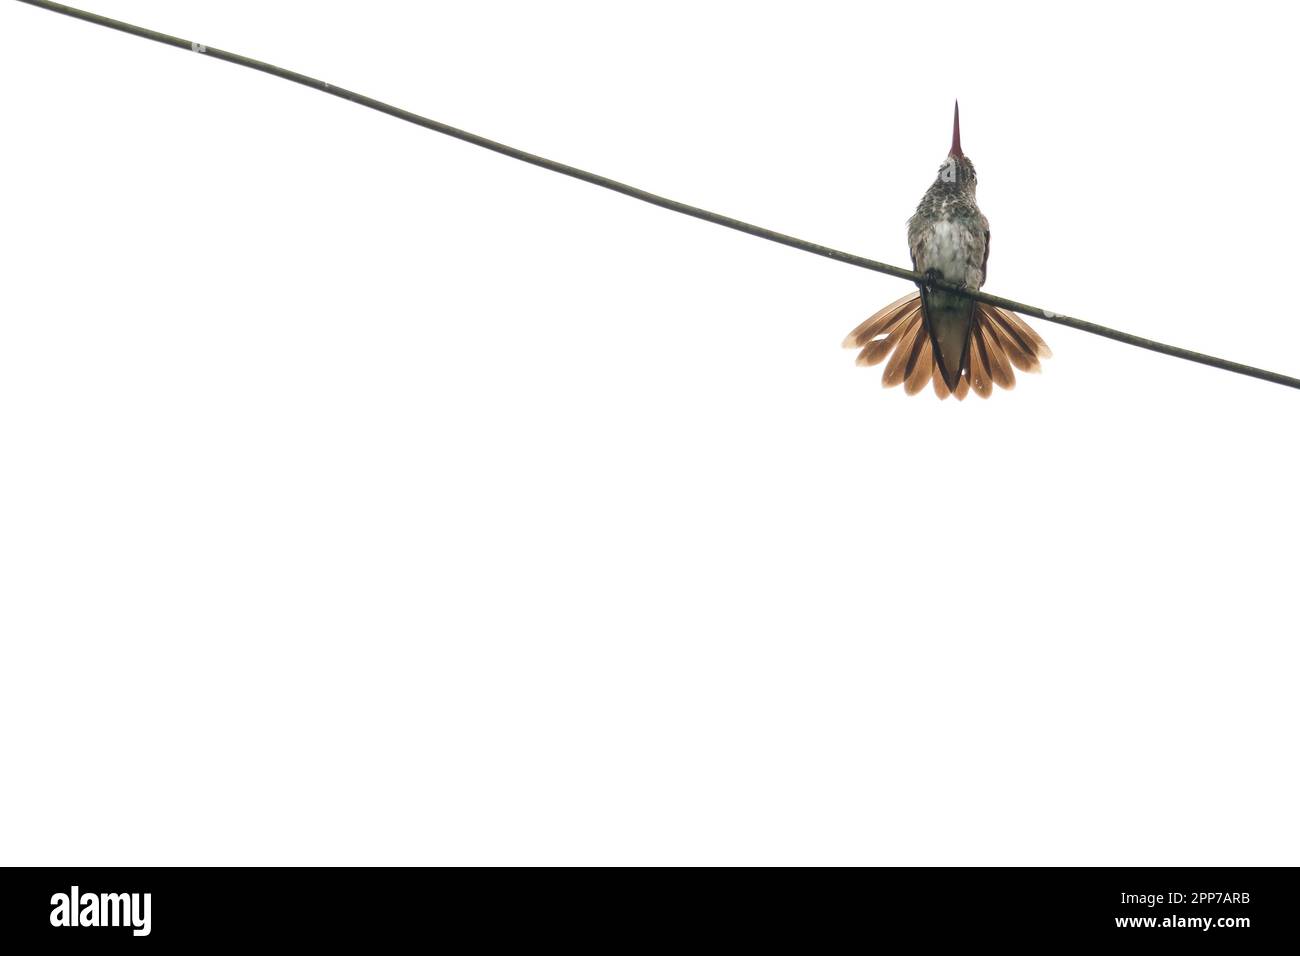 Basso angolo di tiro Coquette festivo uccello in piedi su filo elettrico con sfondo bianco isolato. Fotografia di uccelli per sfondi. Foto Stock